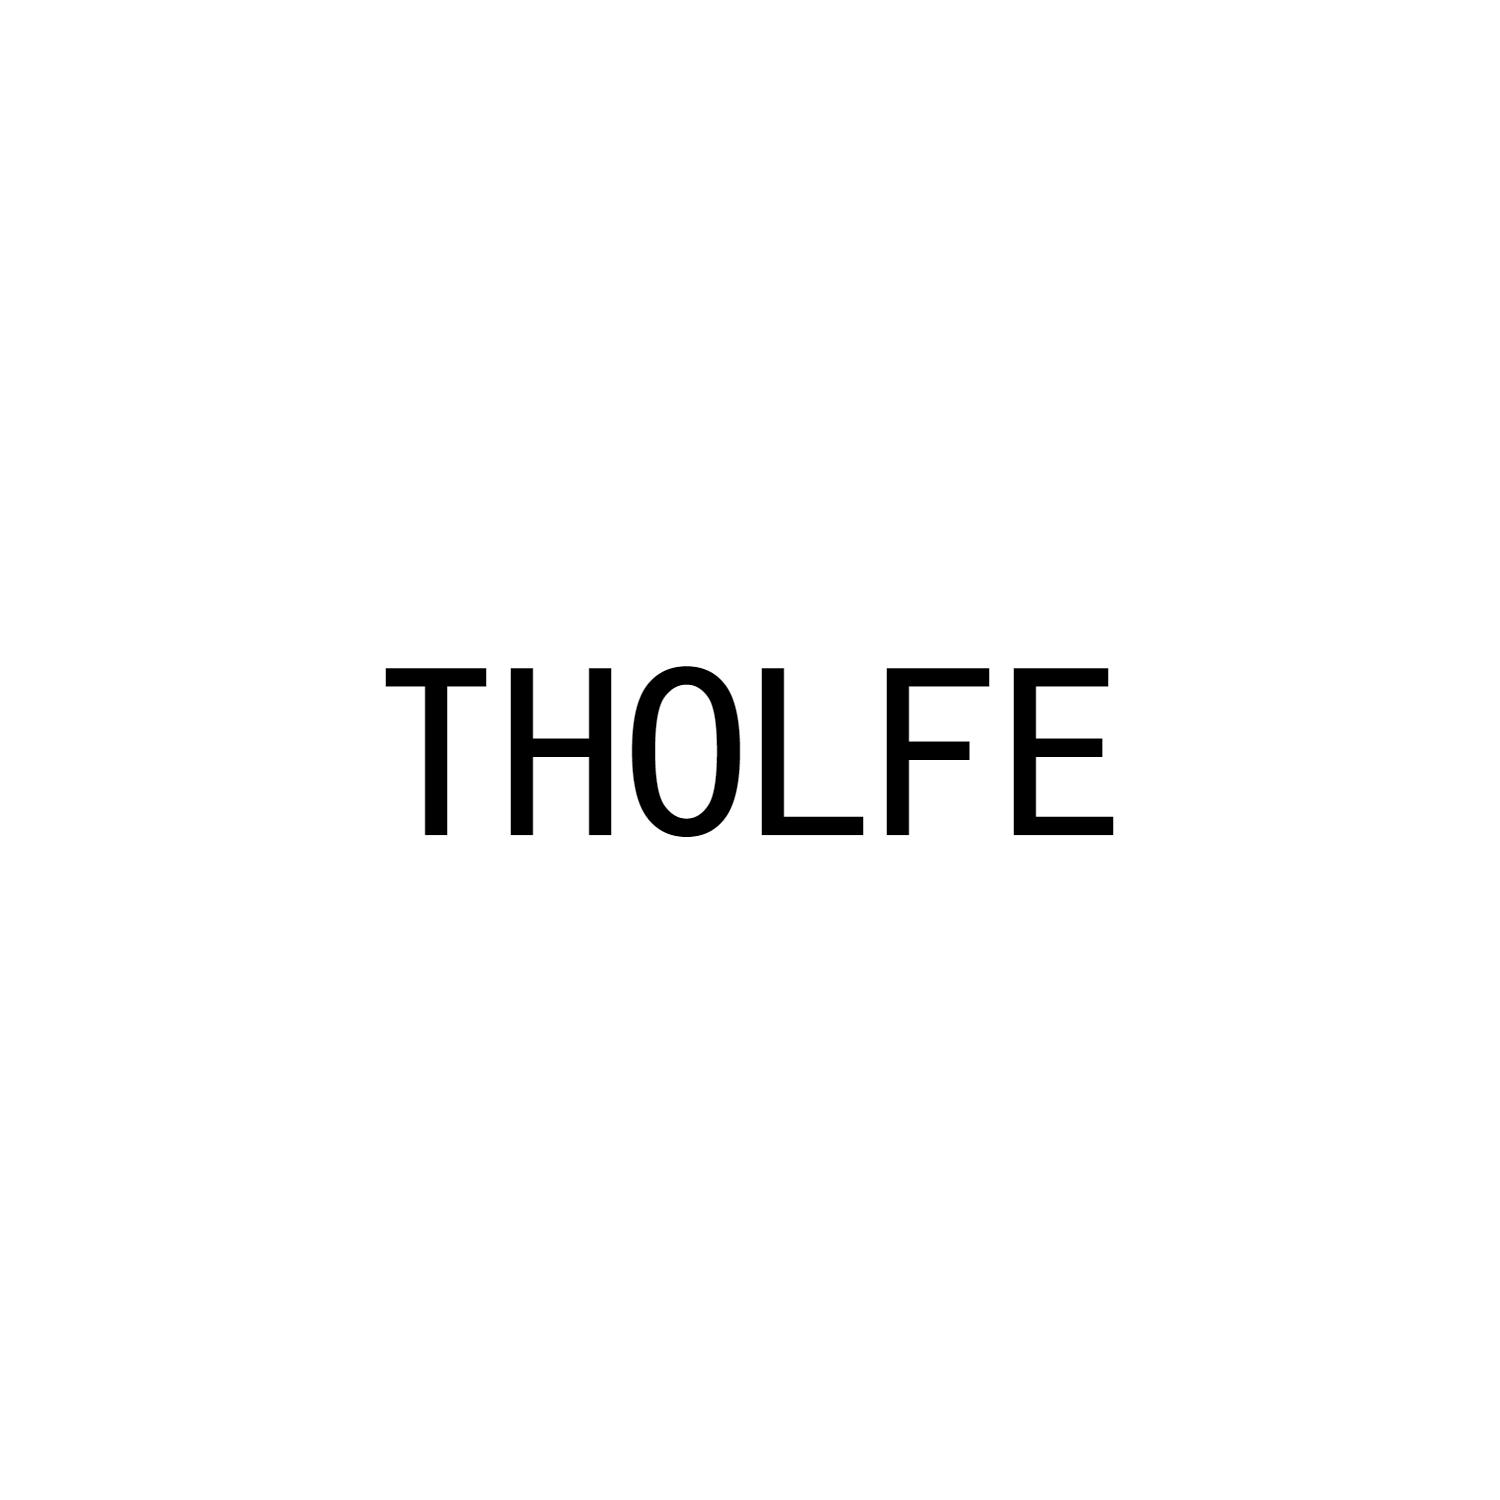 THOLFE